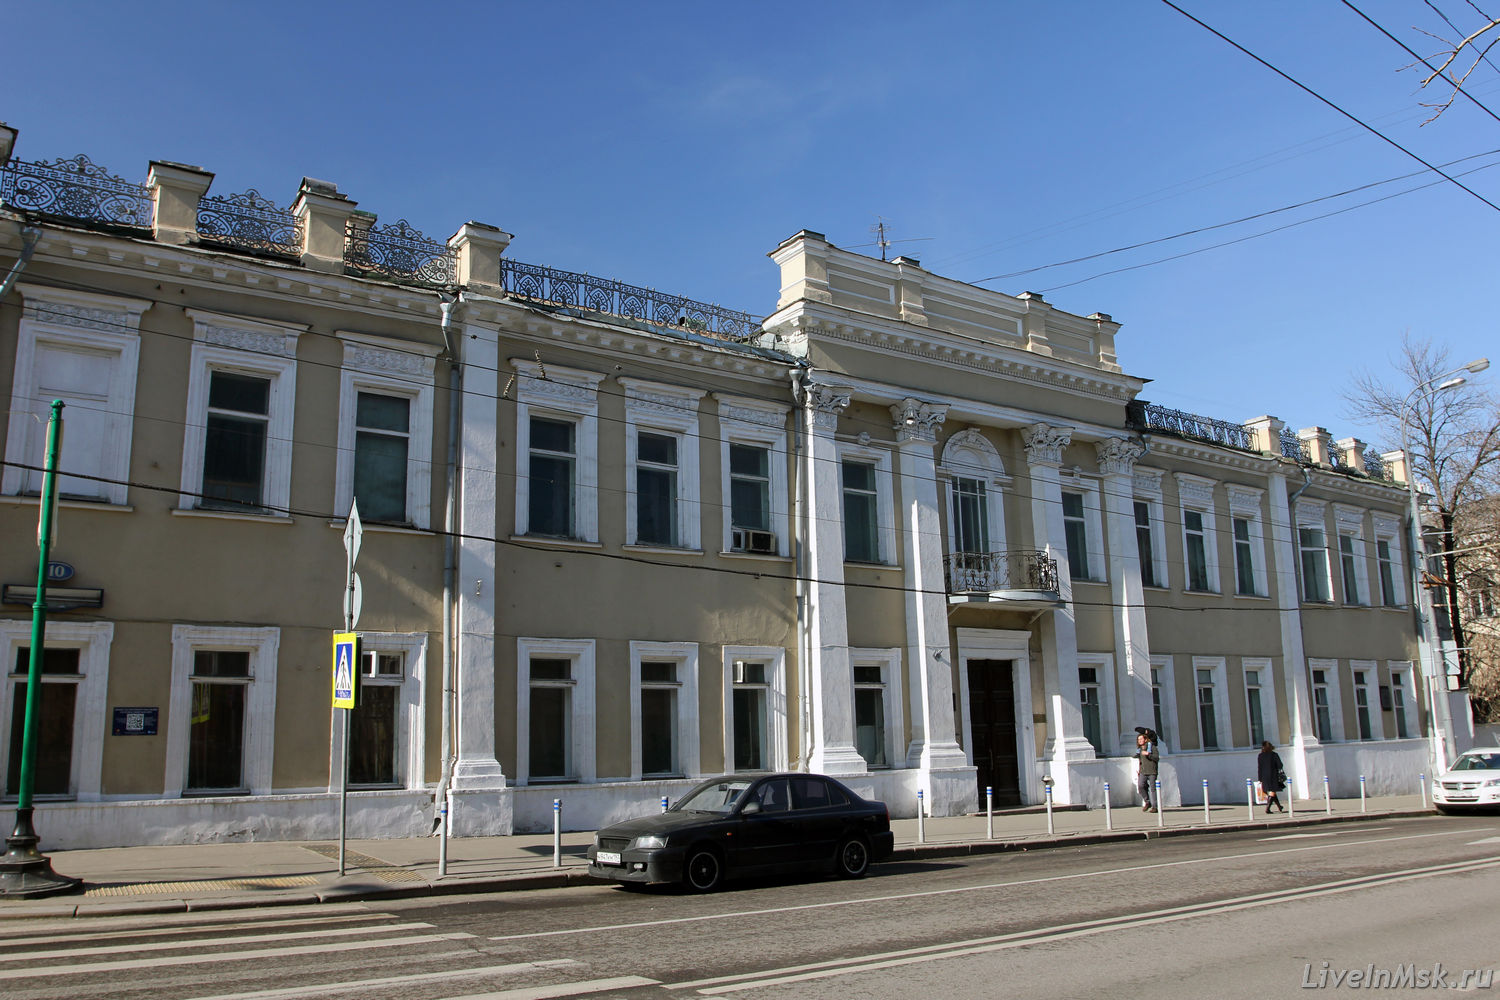 Дом князя И.М. Одоевского, фото 2016 года